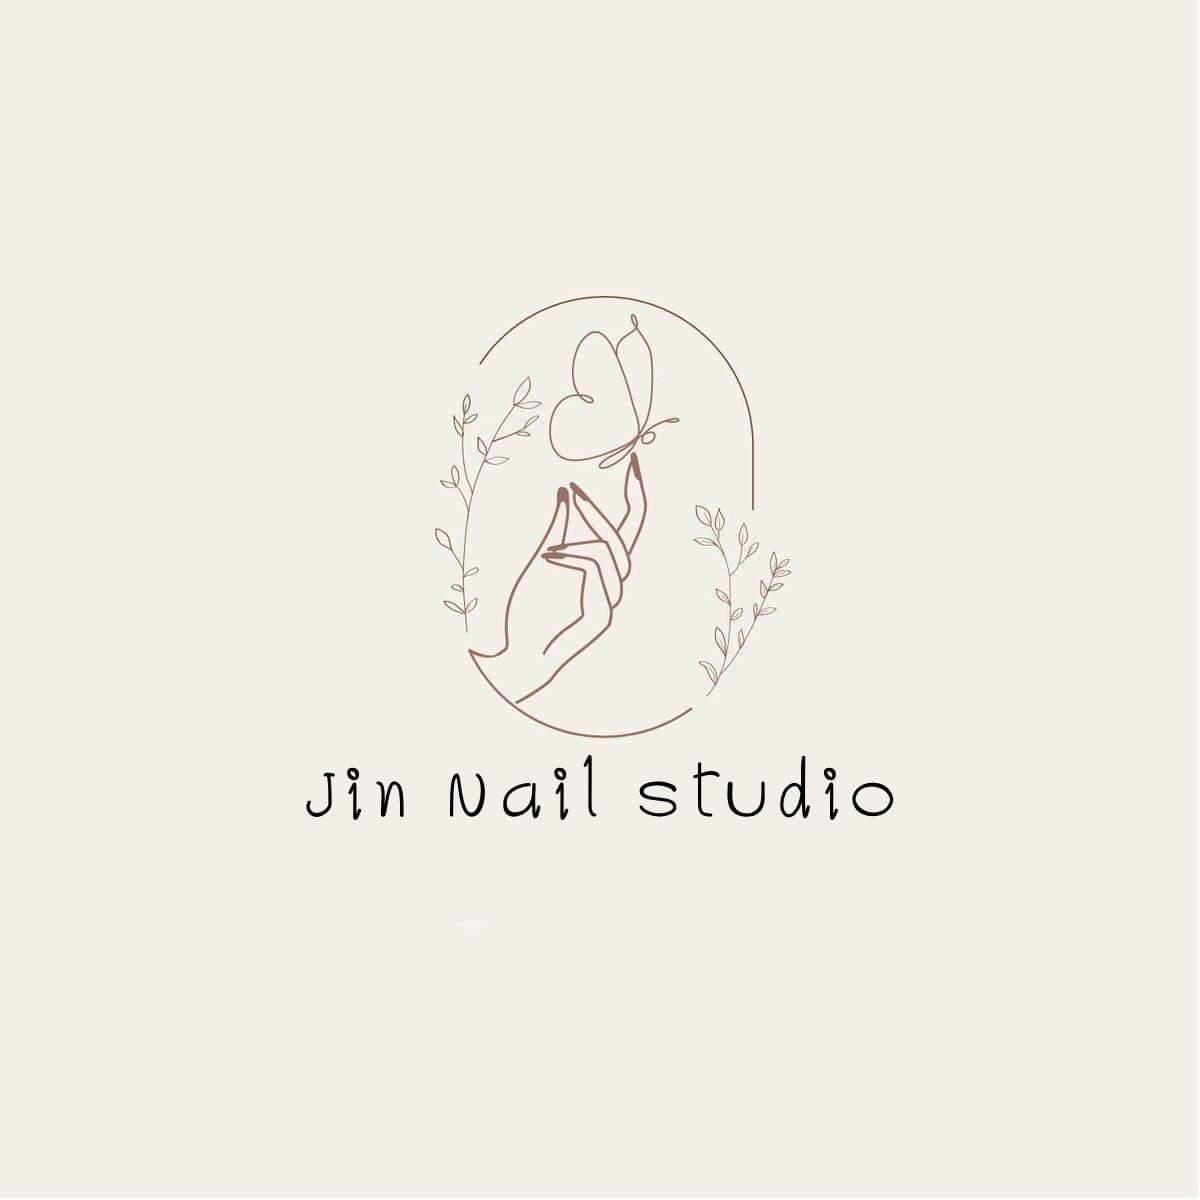 Jin nail studio